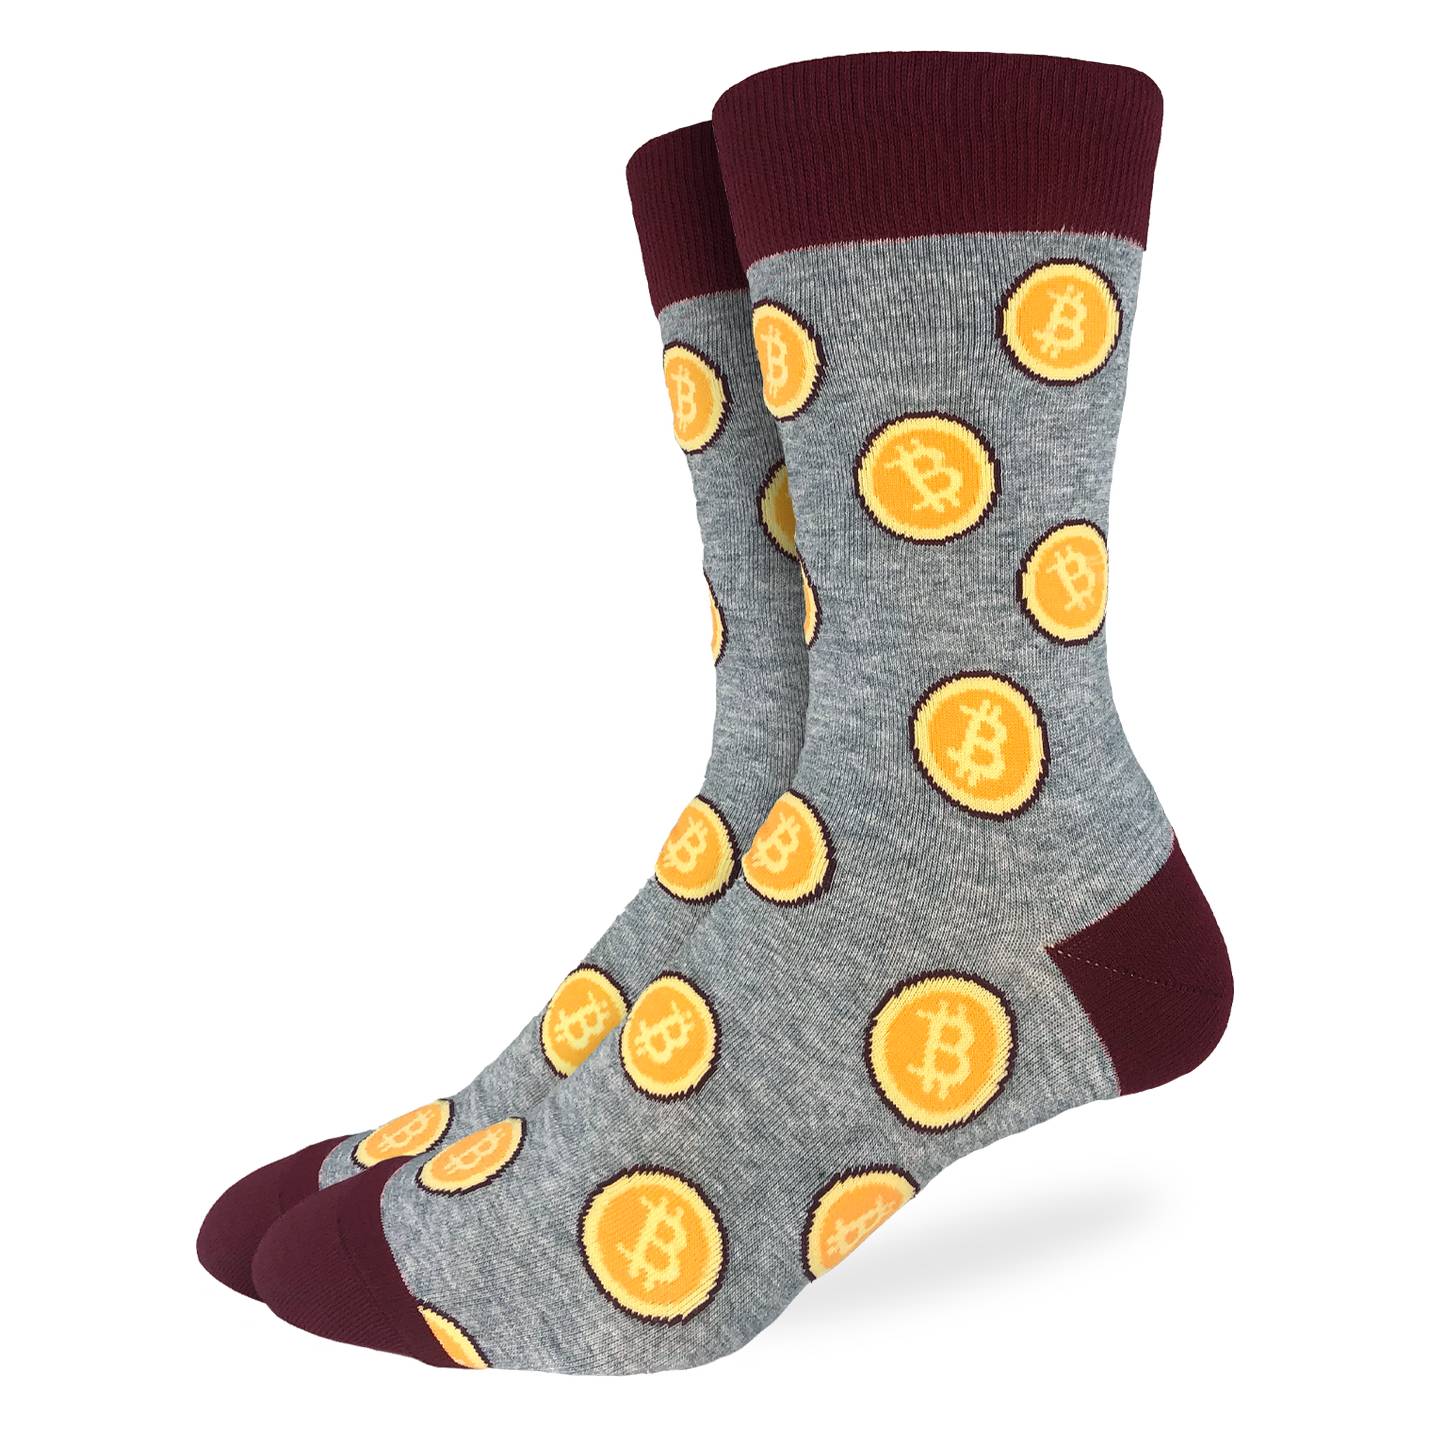 Men's Bitcoin Crew Socks